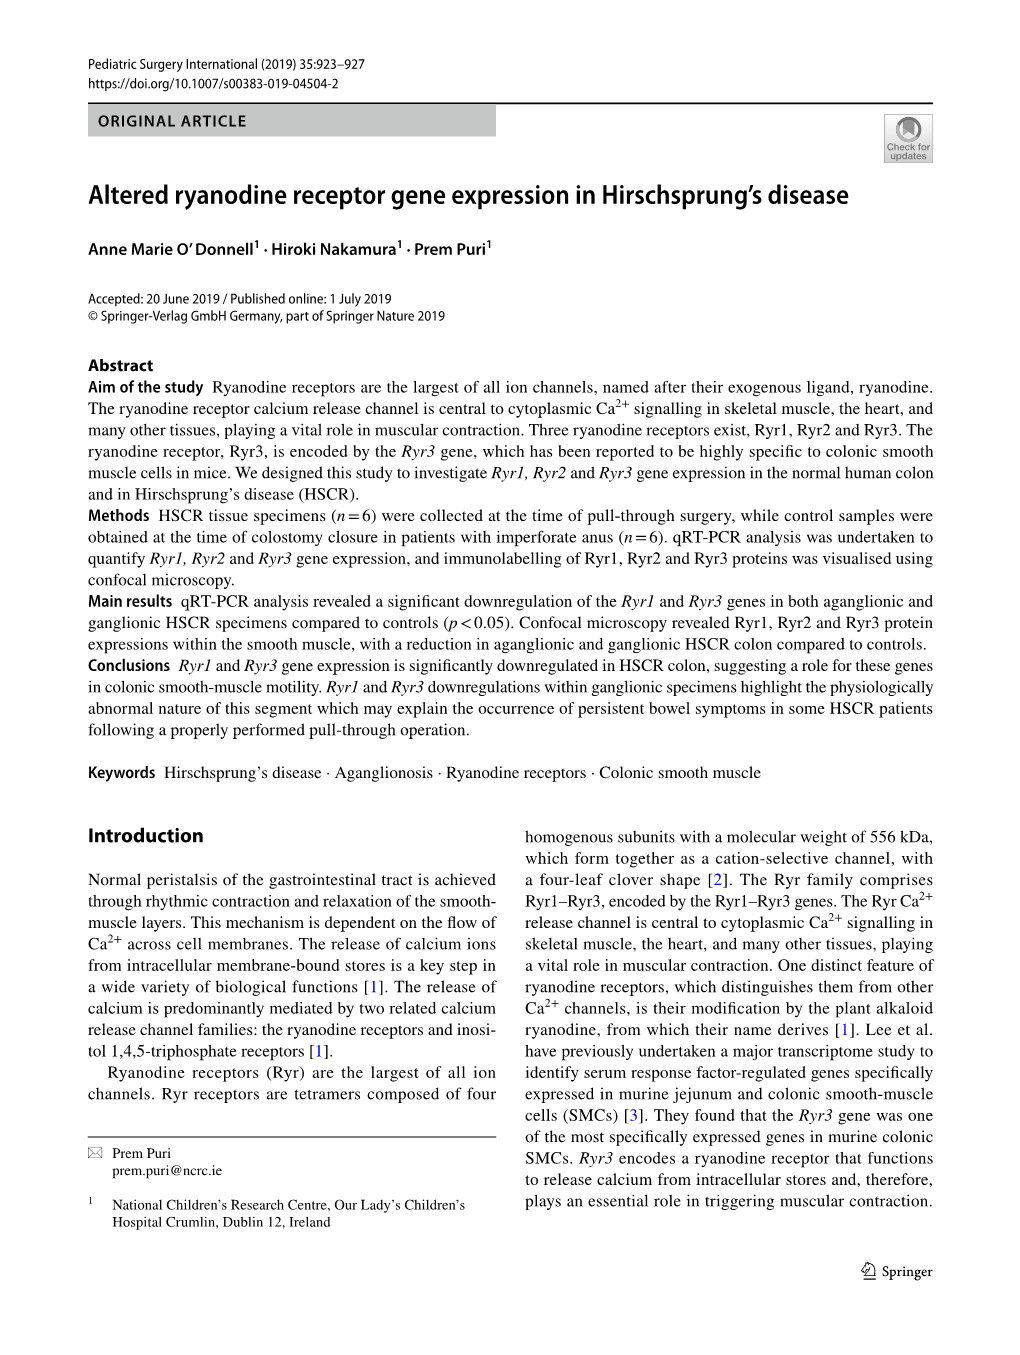 Altered Ryanodine Receptor Gene Expression in Hirschsprung's Disease